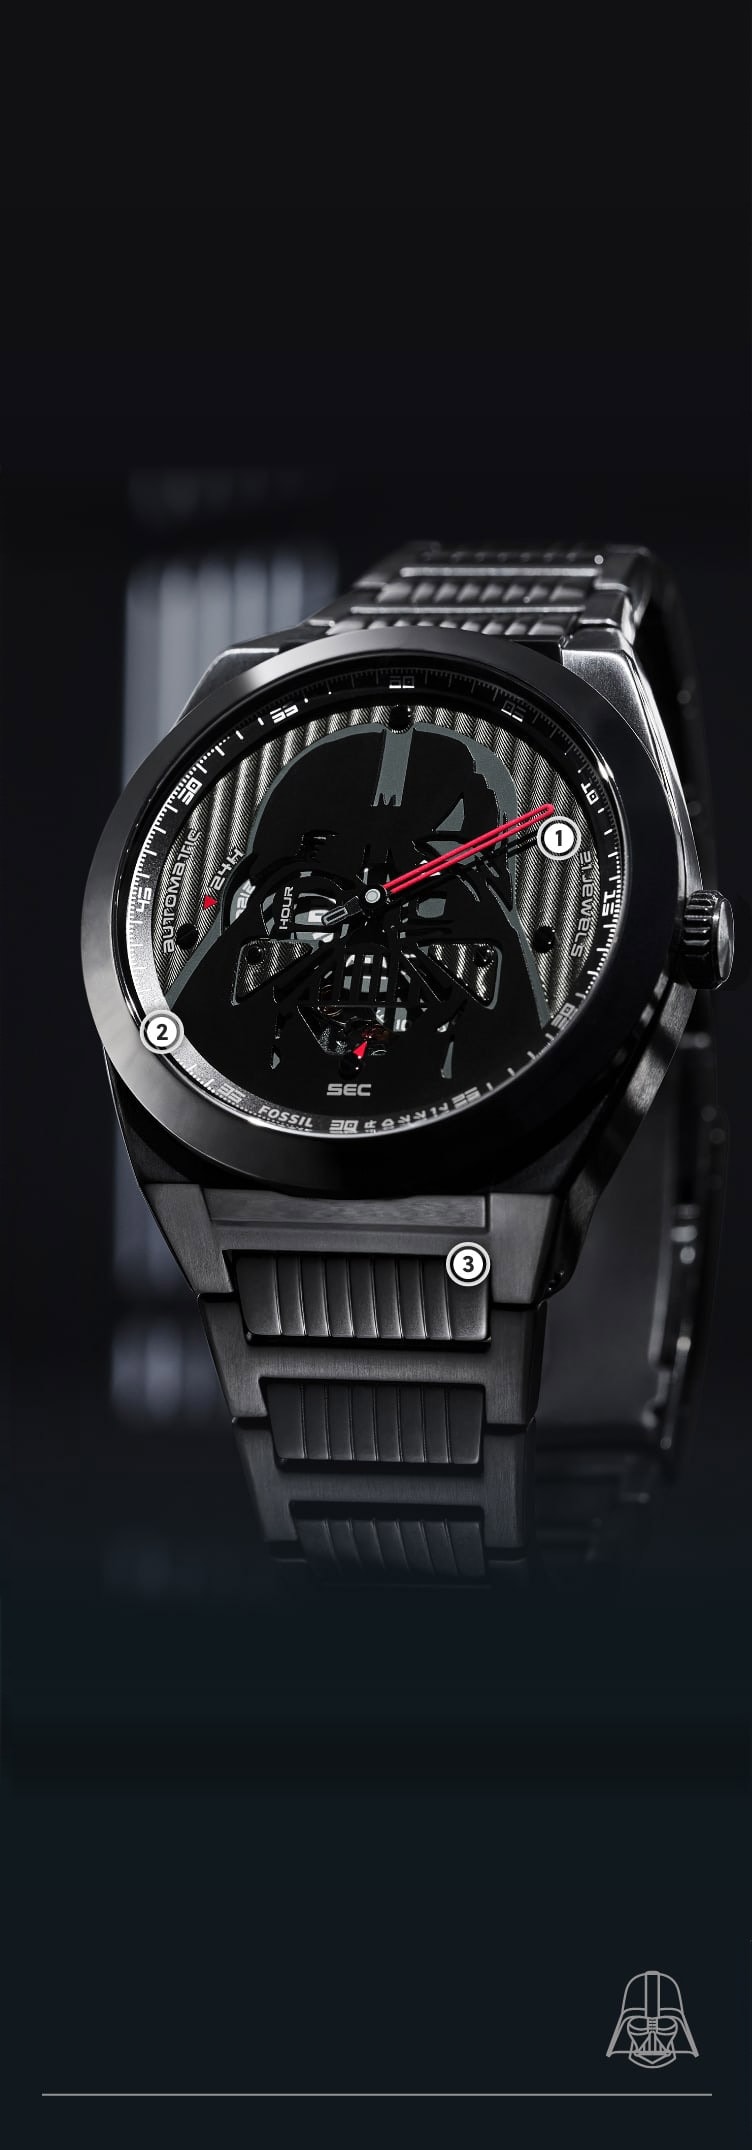 Primo piano di un orologio nero con un casco tridimensionale di Darth Vader su un quadrante nero testurizzato.